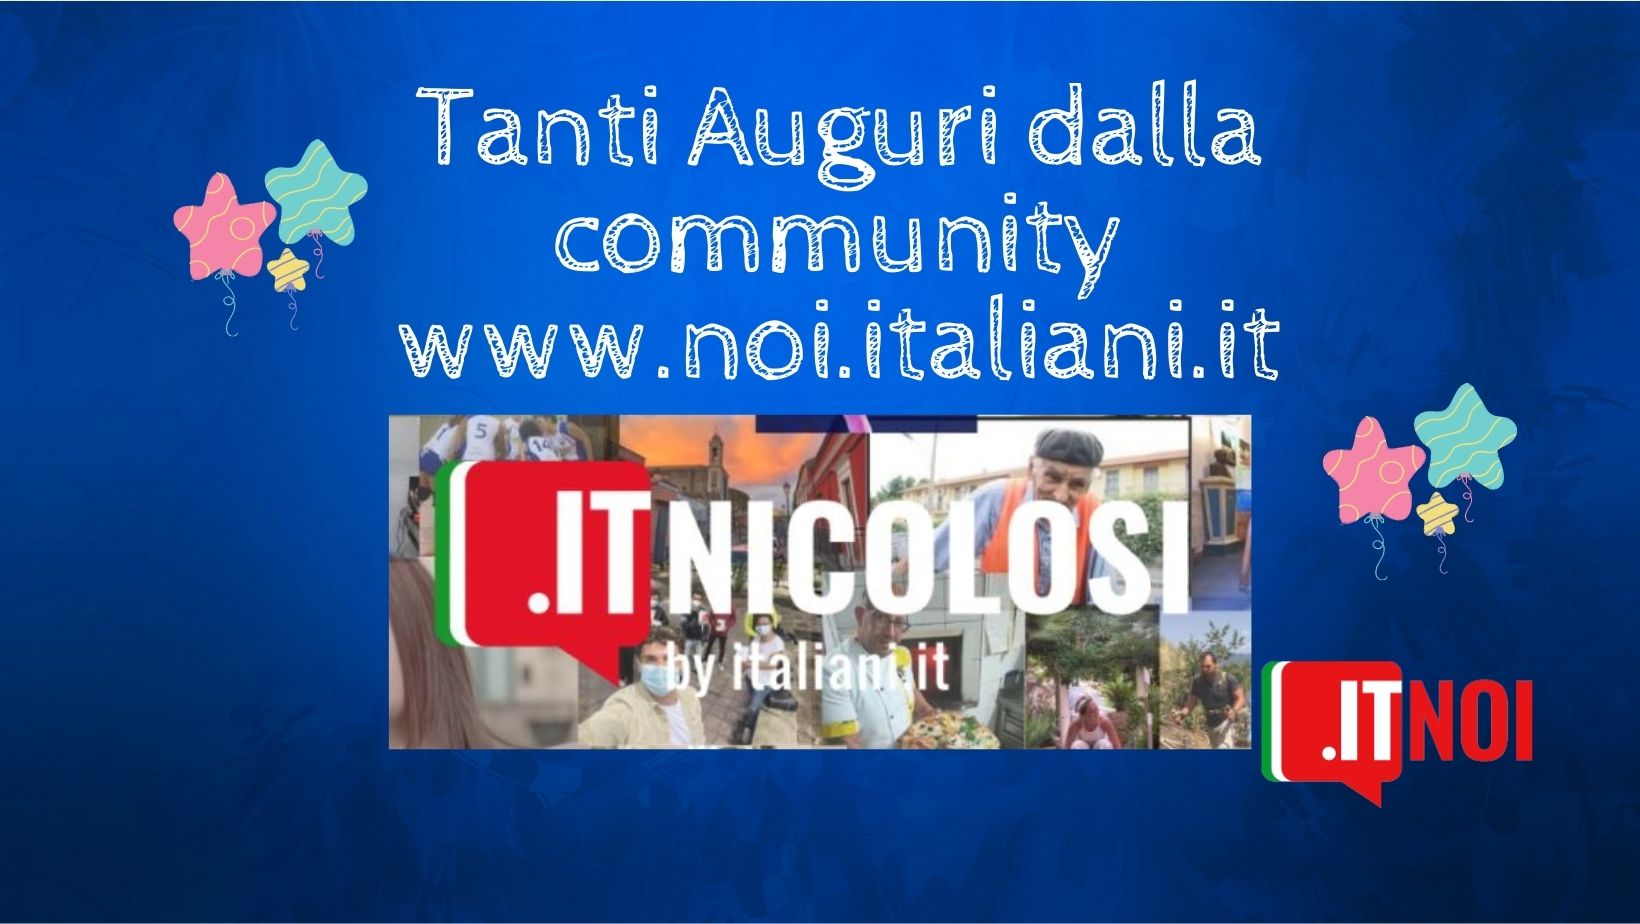 La community festeggia itNicolosi e la sua squadra